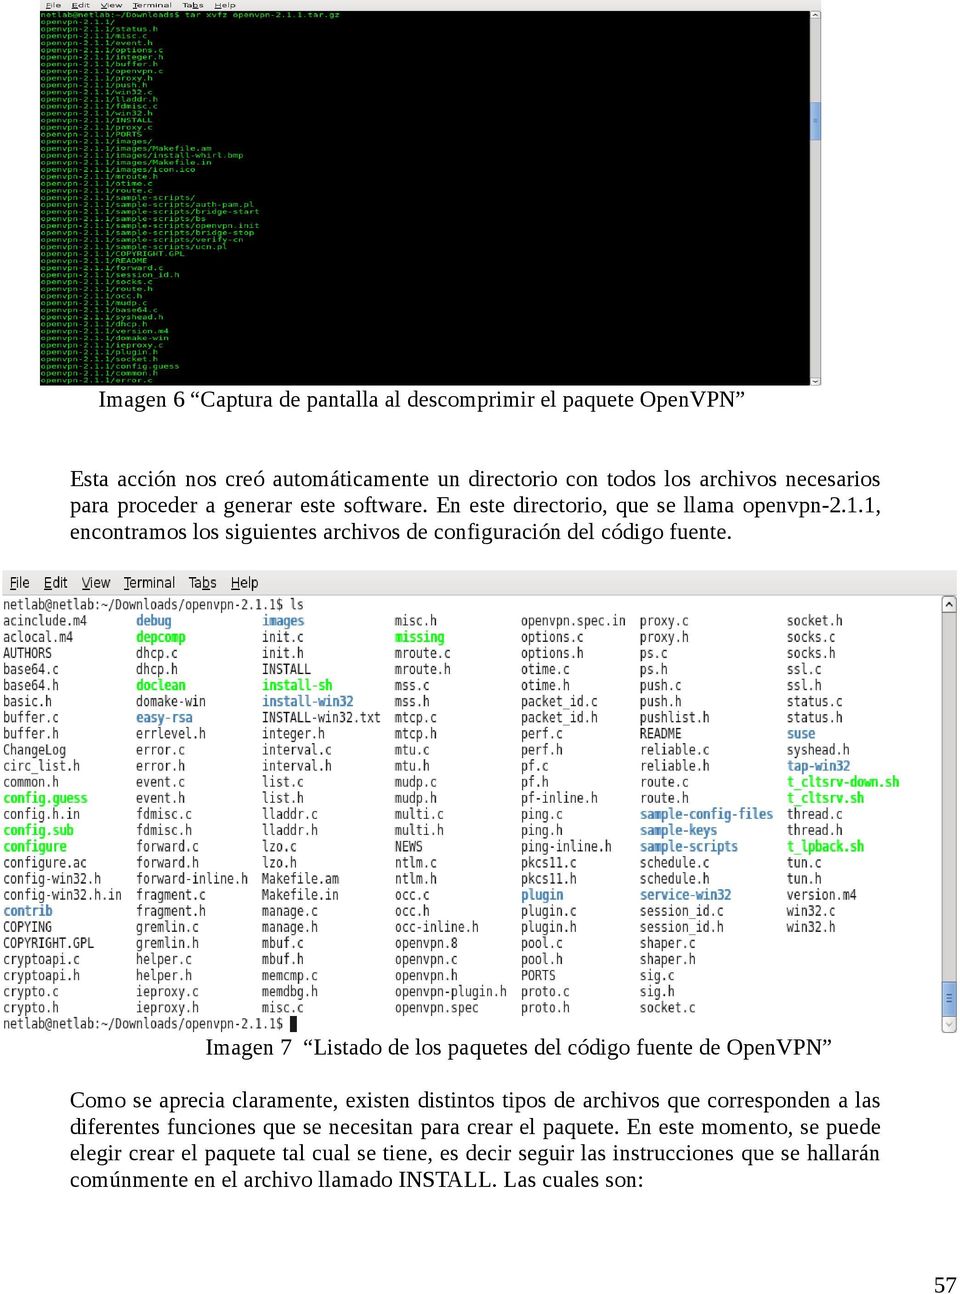 Imagen 7 Listado de los paquetes del código fuente de OpenVPN Como se aprecia claramente, existen distintos tipos de archivos que corresponden a las diferentes funciones que